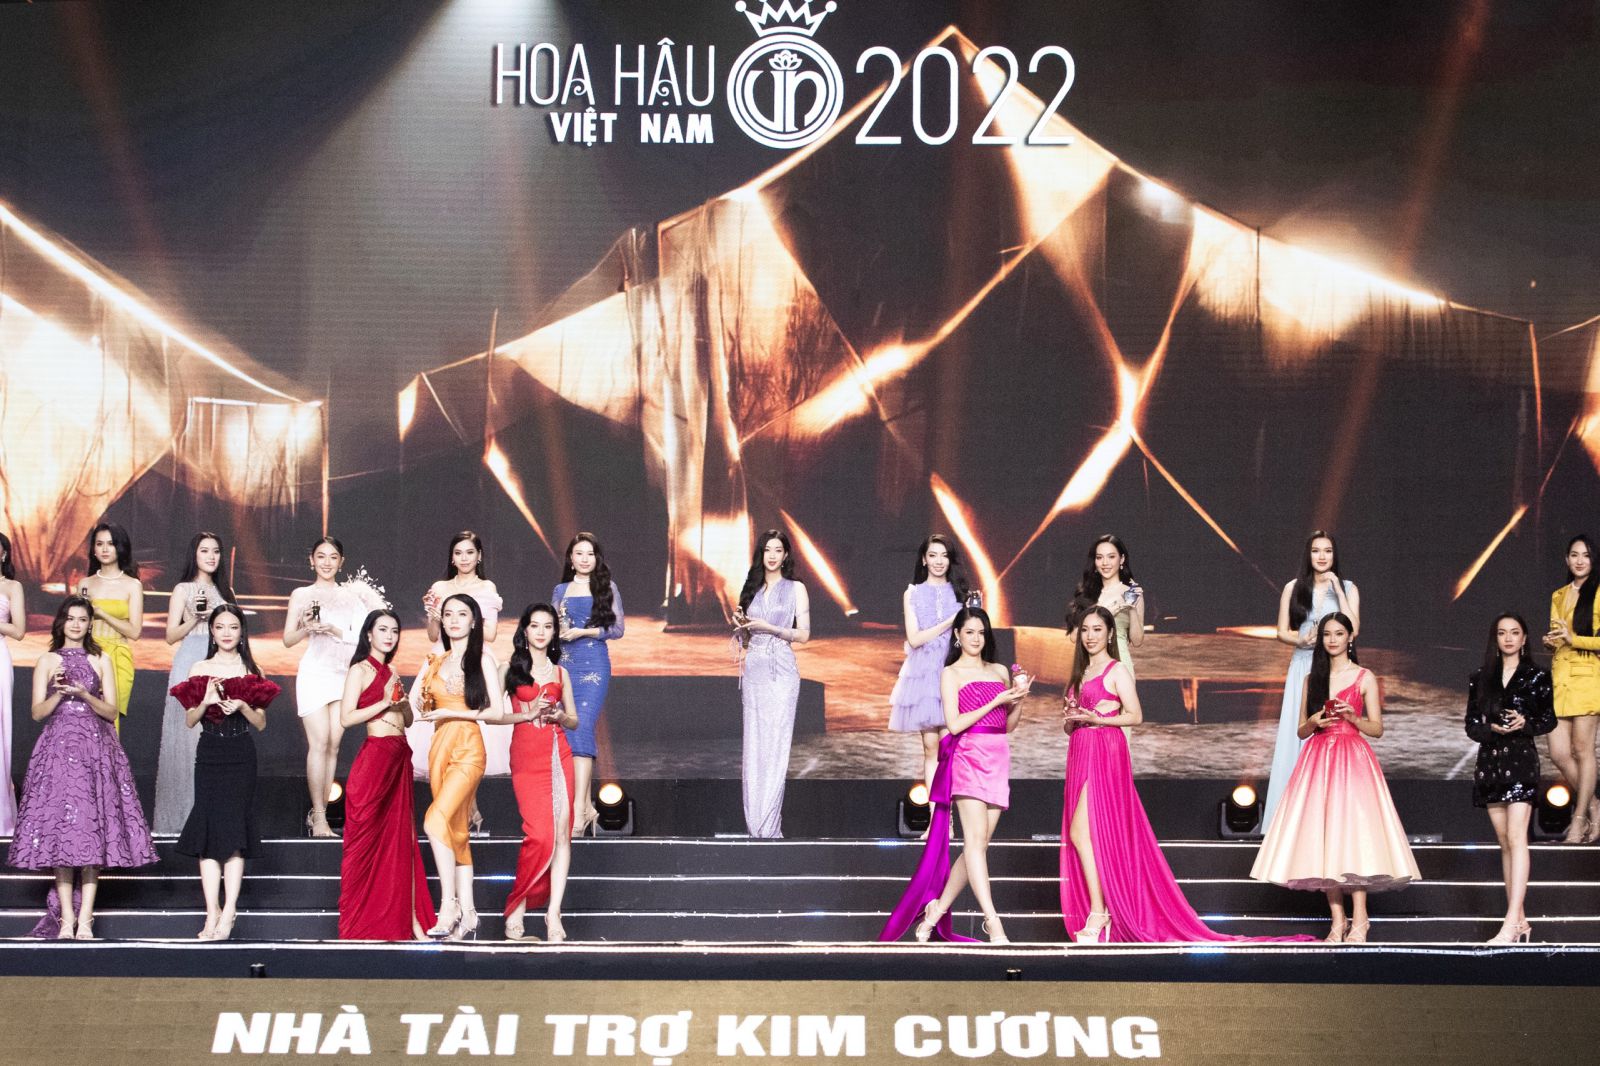 Bộ Sưu Tập Dấu Ấn Hương GoodCharme được trình diễn trong đêm chung khảo toàn quốc HHVN 2022